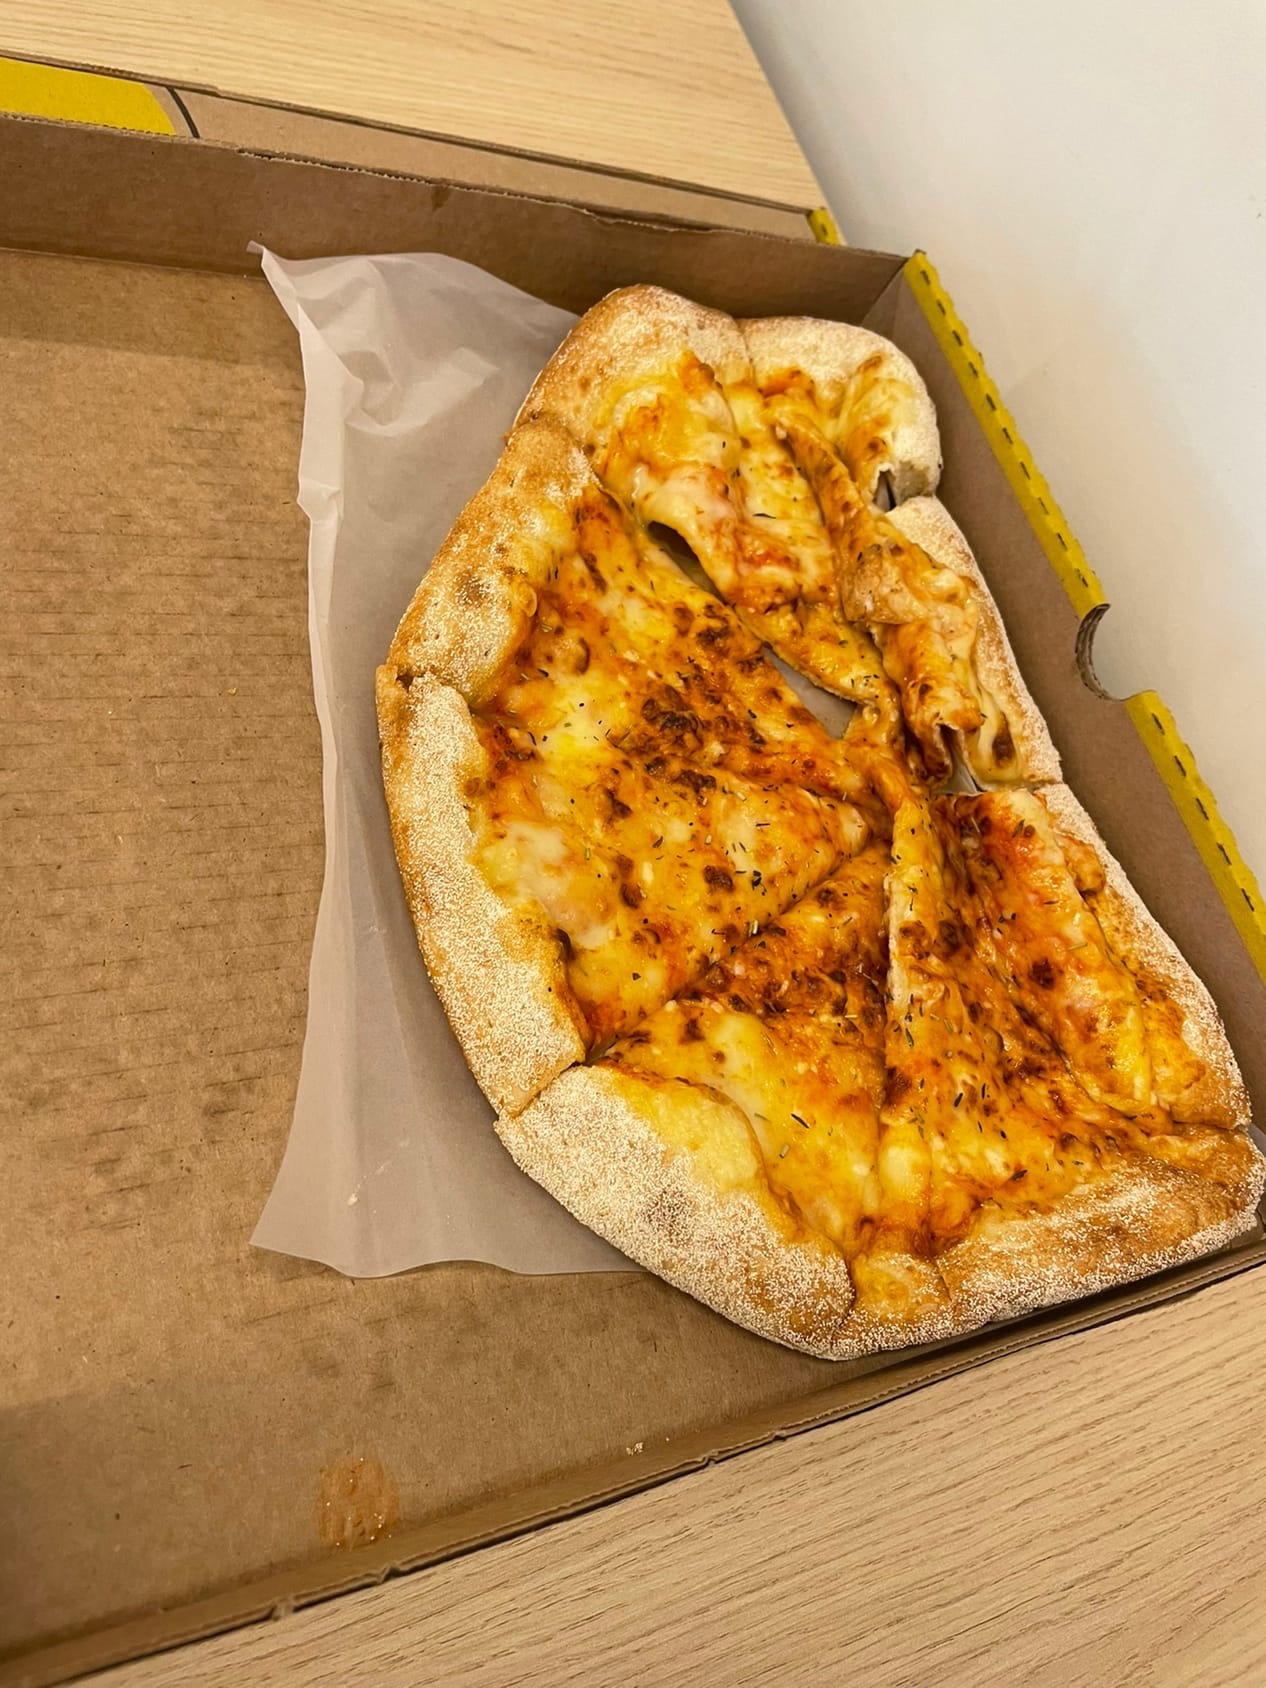 лучшая доставка пиццы в красноярске фото 92